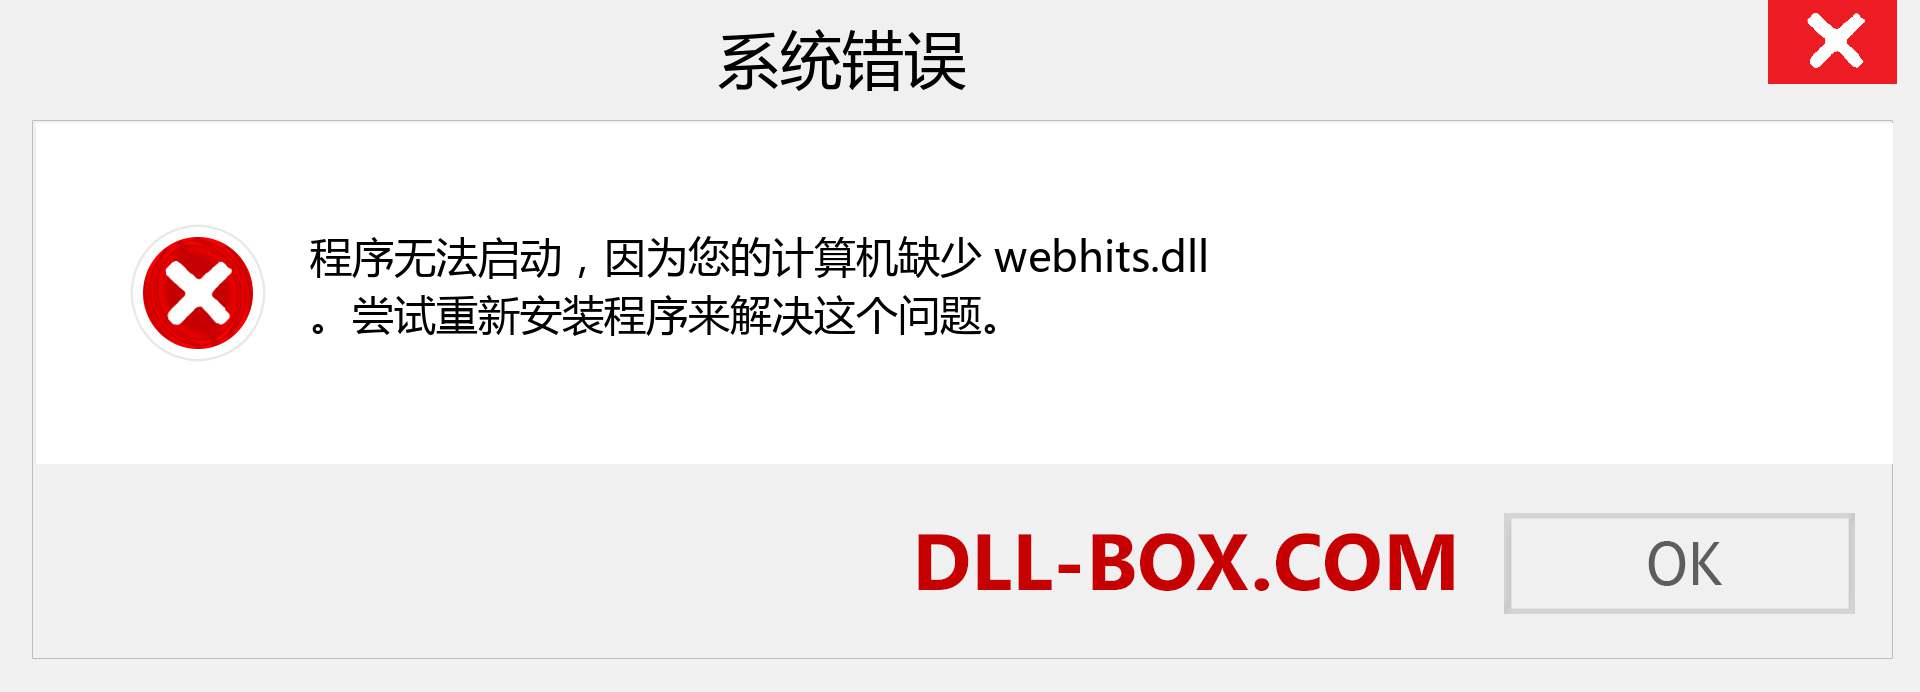 webhits.dll 文件丢失？。 适用于 Windows 7、8、10 的下载 - 修复 Windows、照片、图像上的 webhits dll 丢失错误